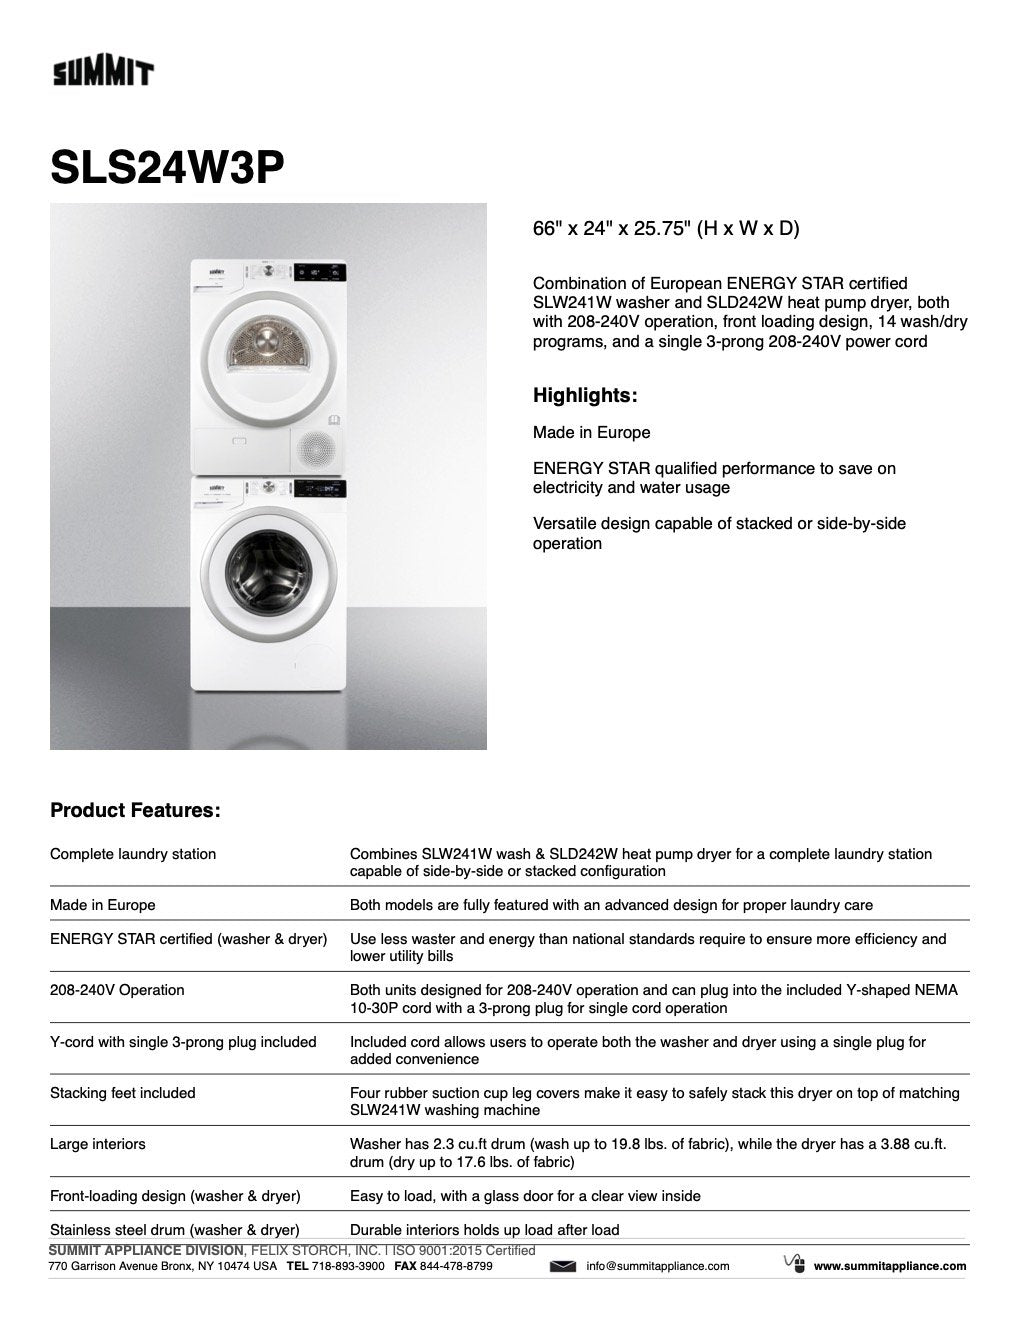 SUMMIT Washer/Heat Pump Dryer Combination